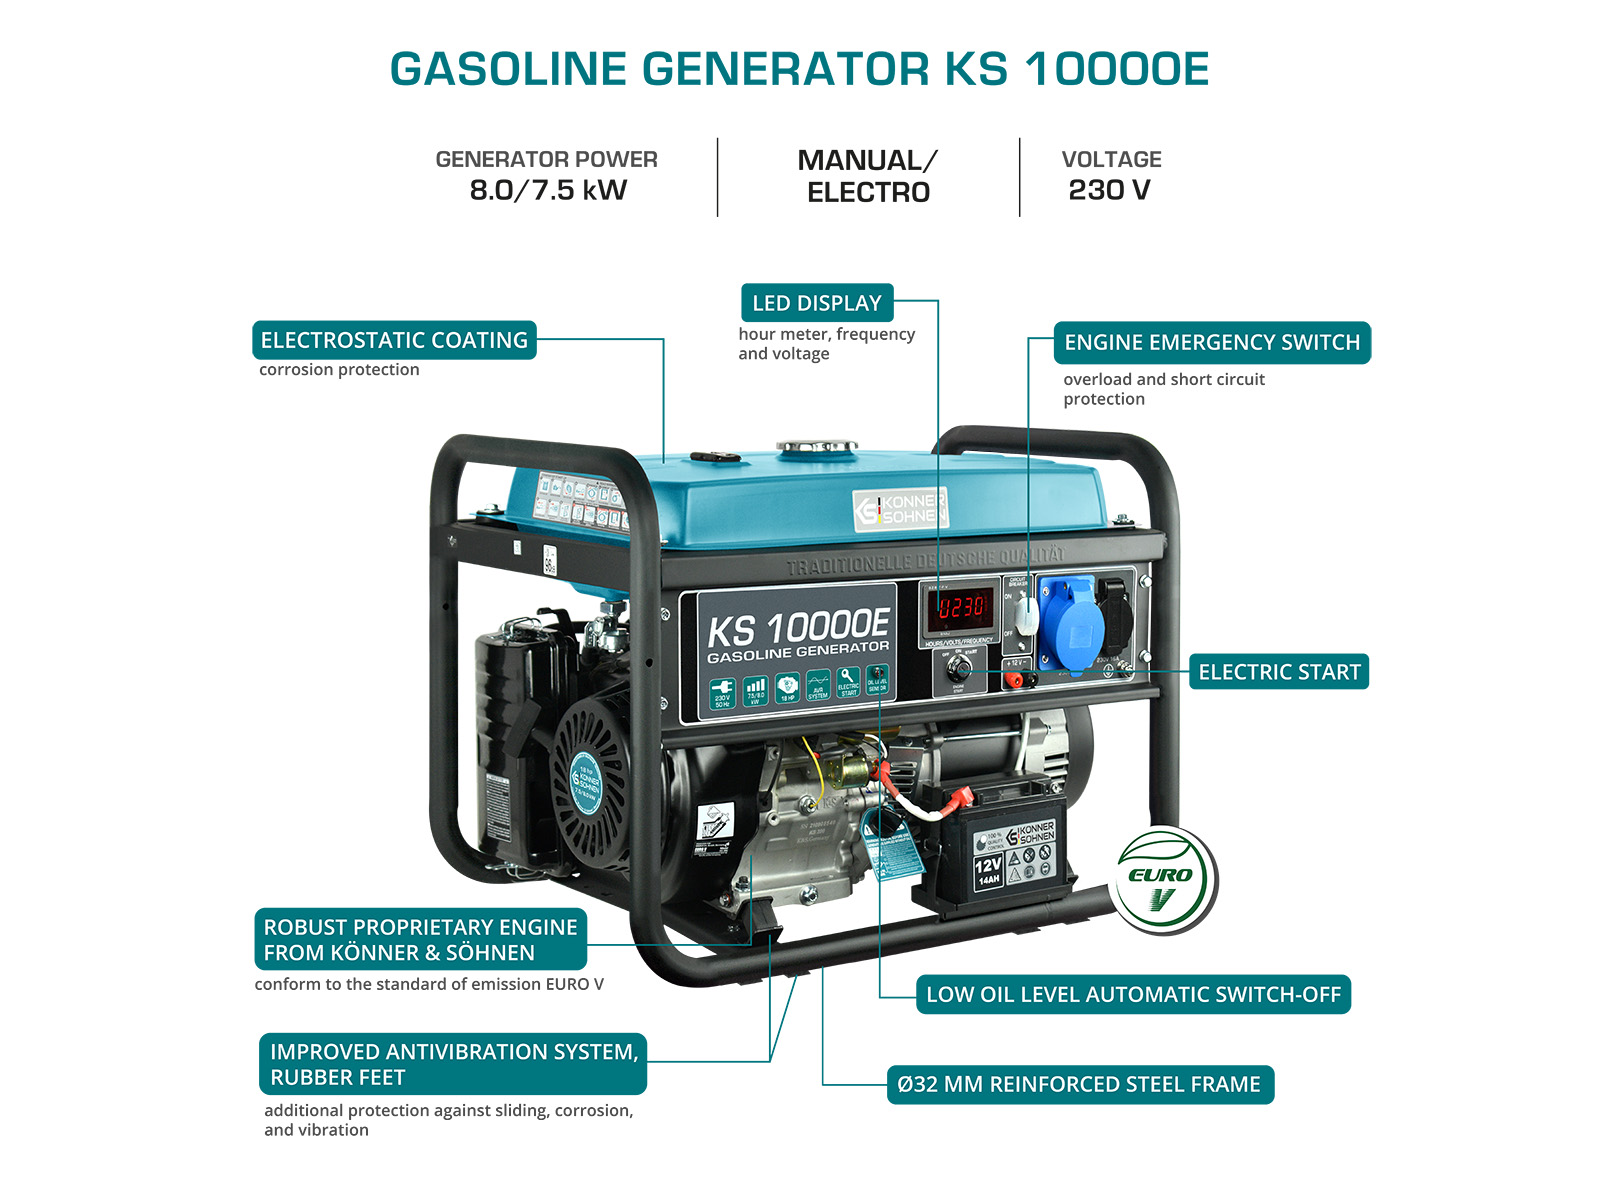 Gasoline generator "Könner & Söhnen" KS 10000E